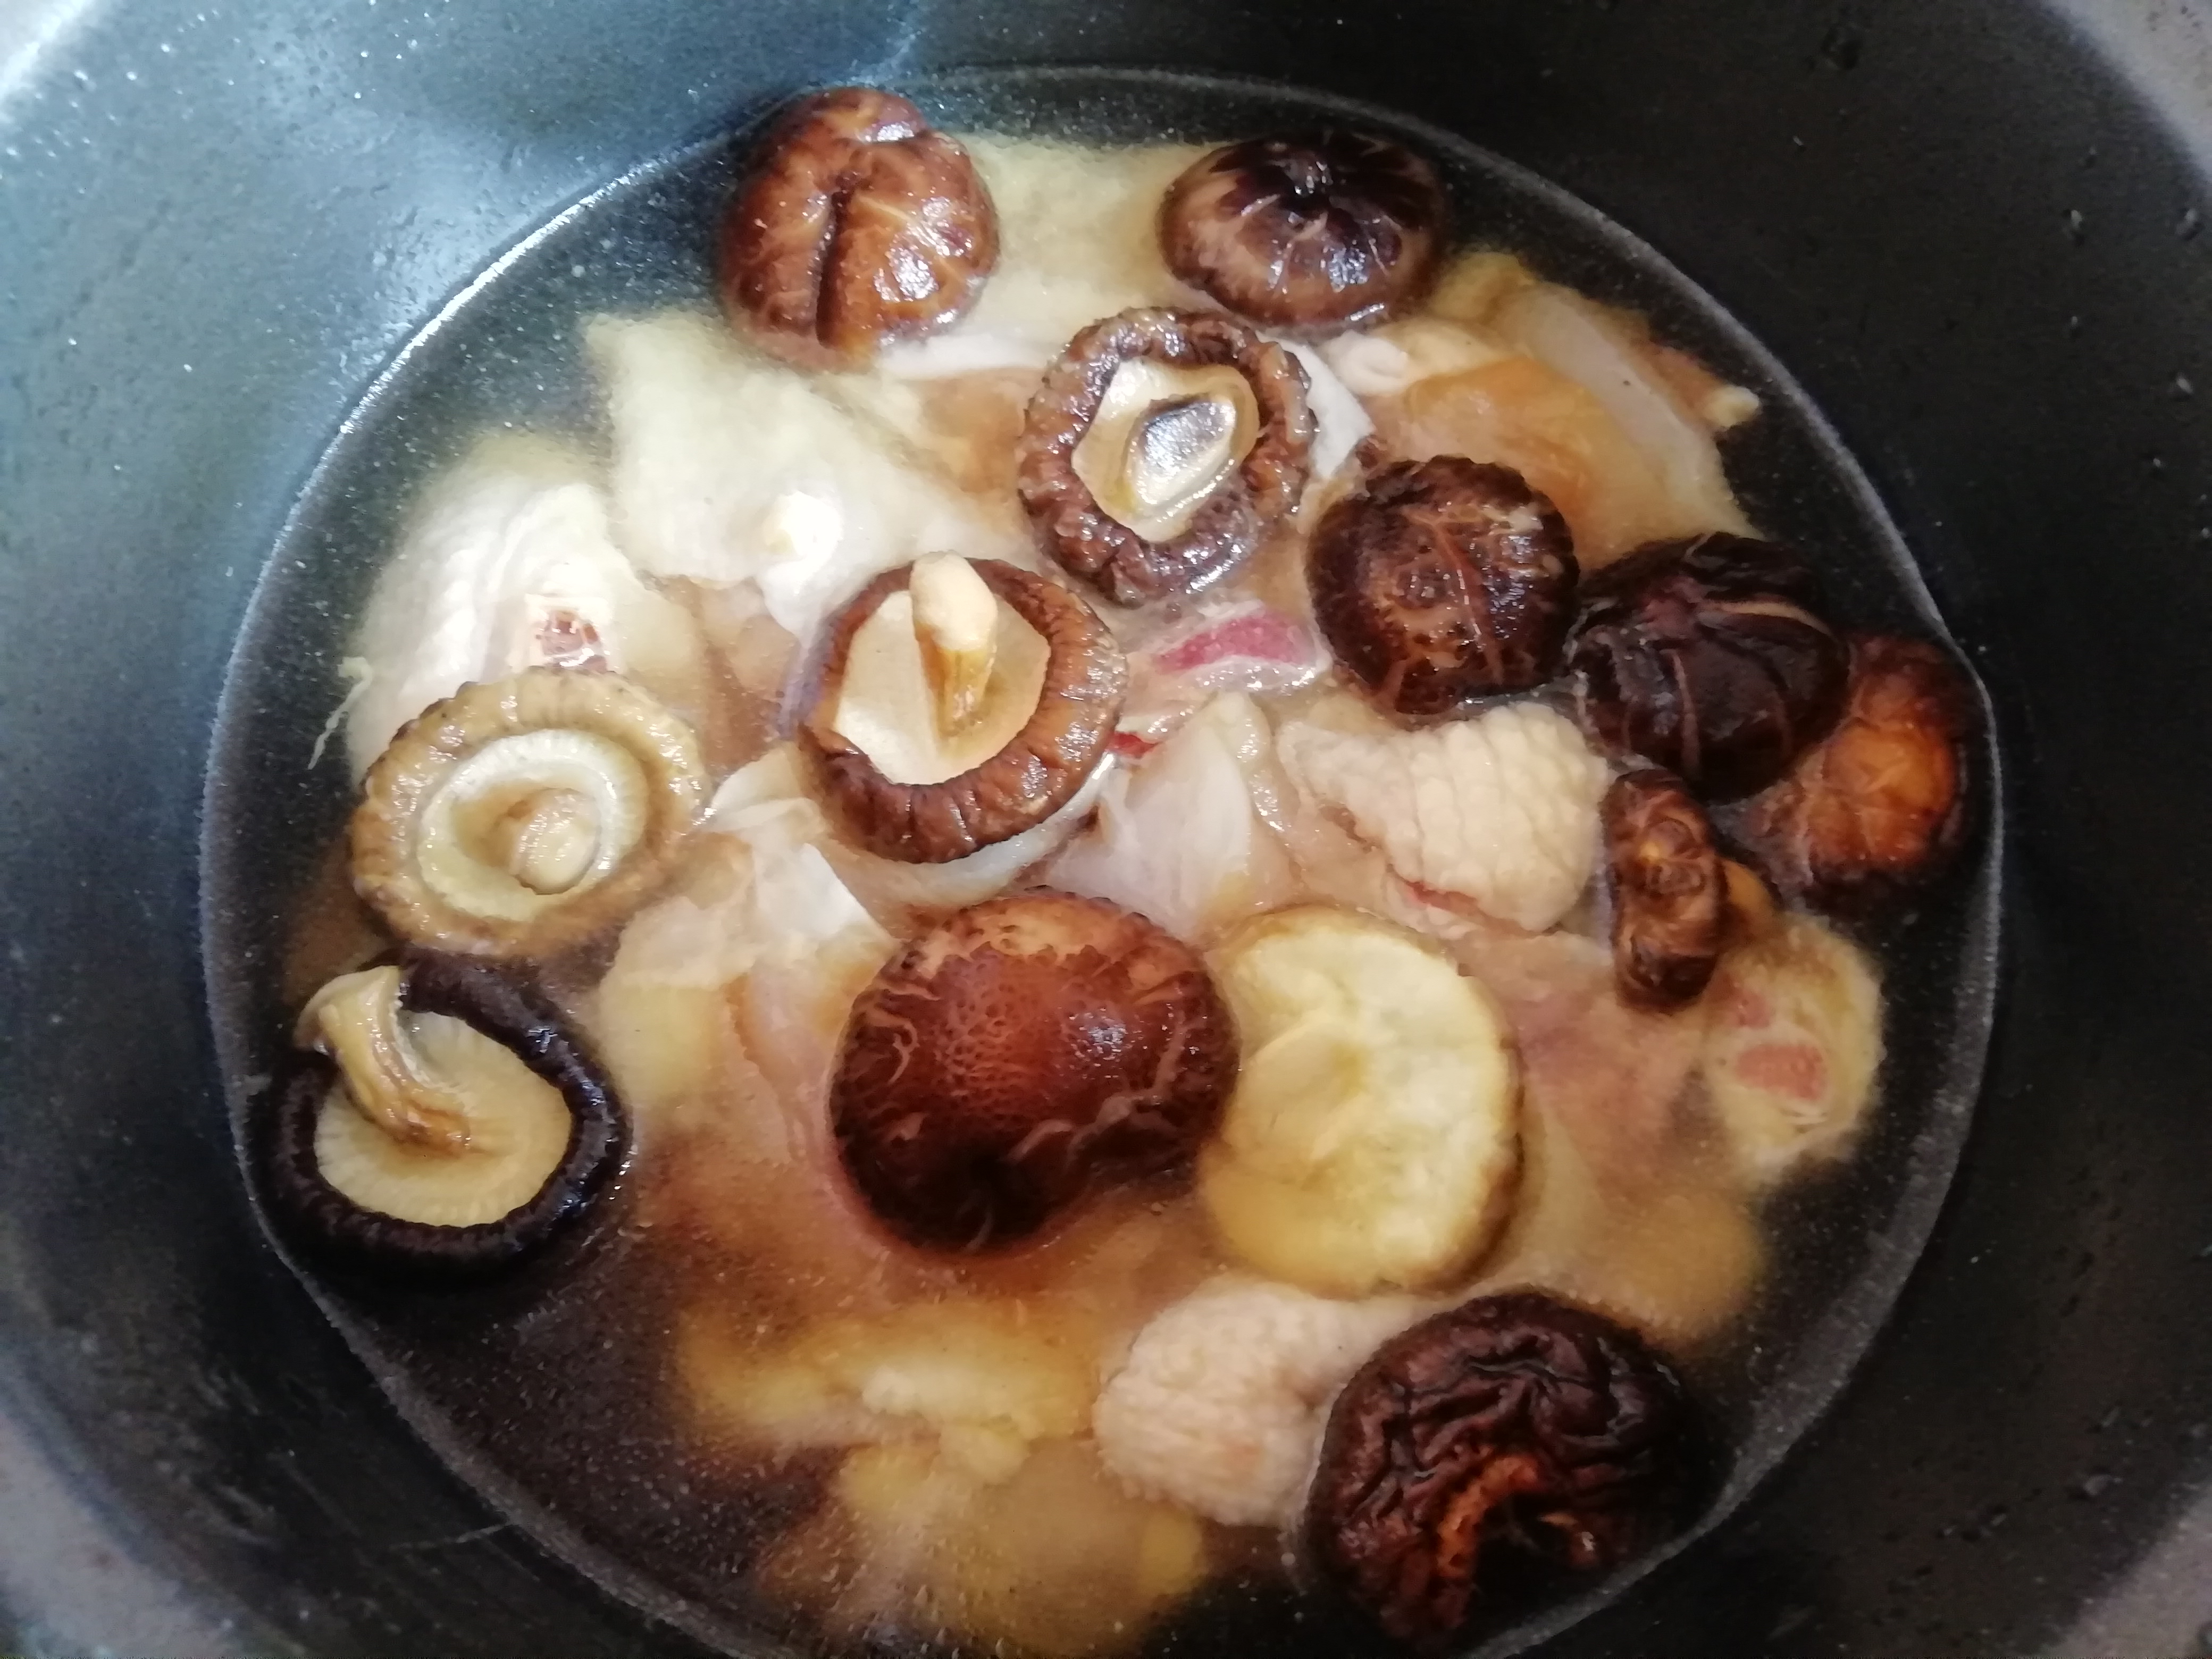 懒人版香菇焖鸡,电饭锅30分钟就搞定,2碗米饭吃的超满足